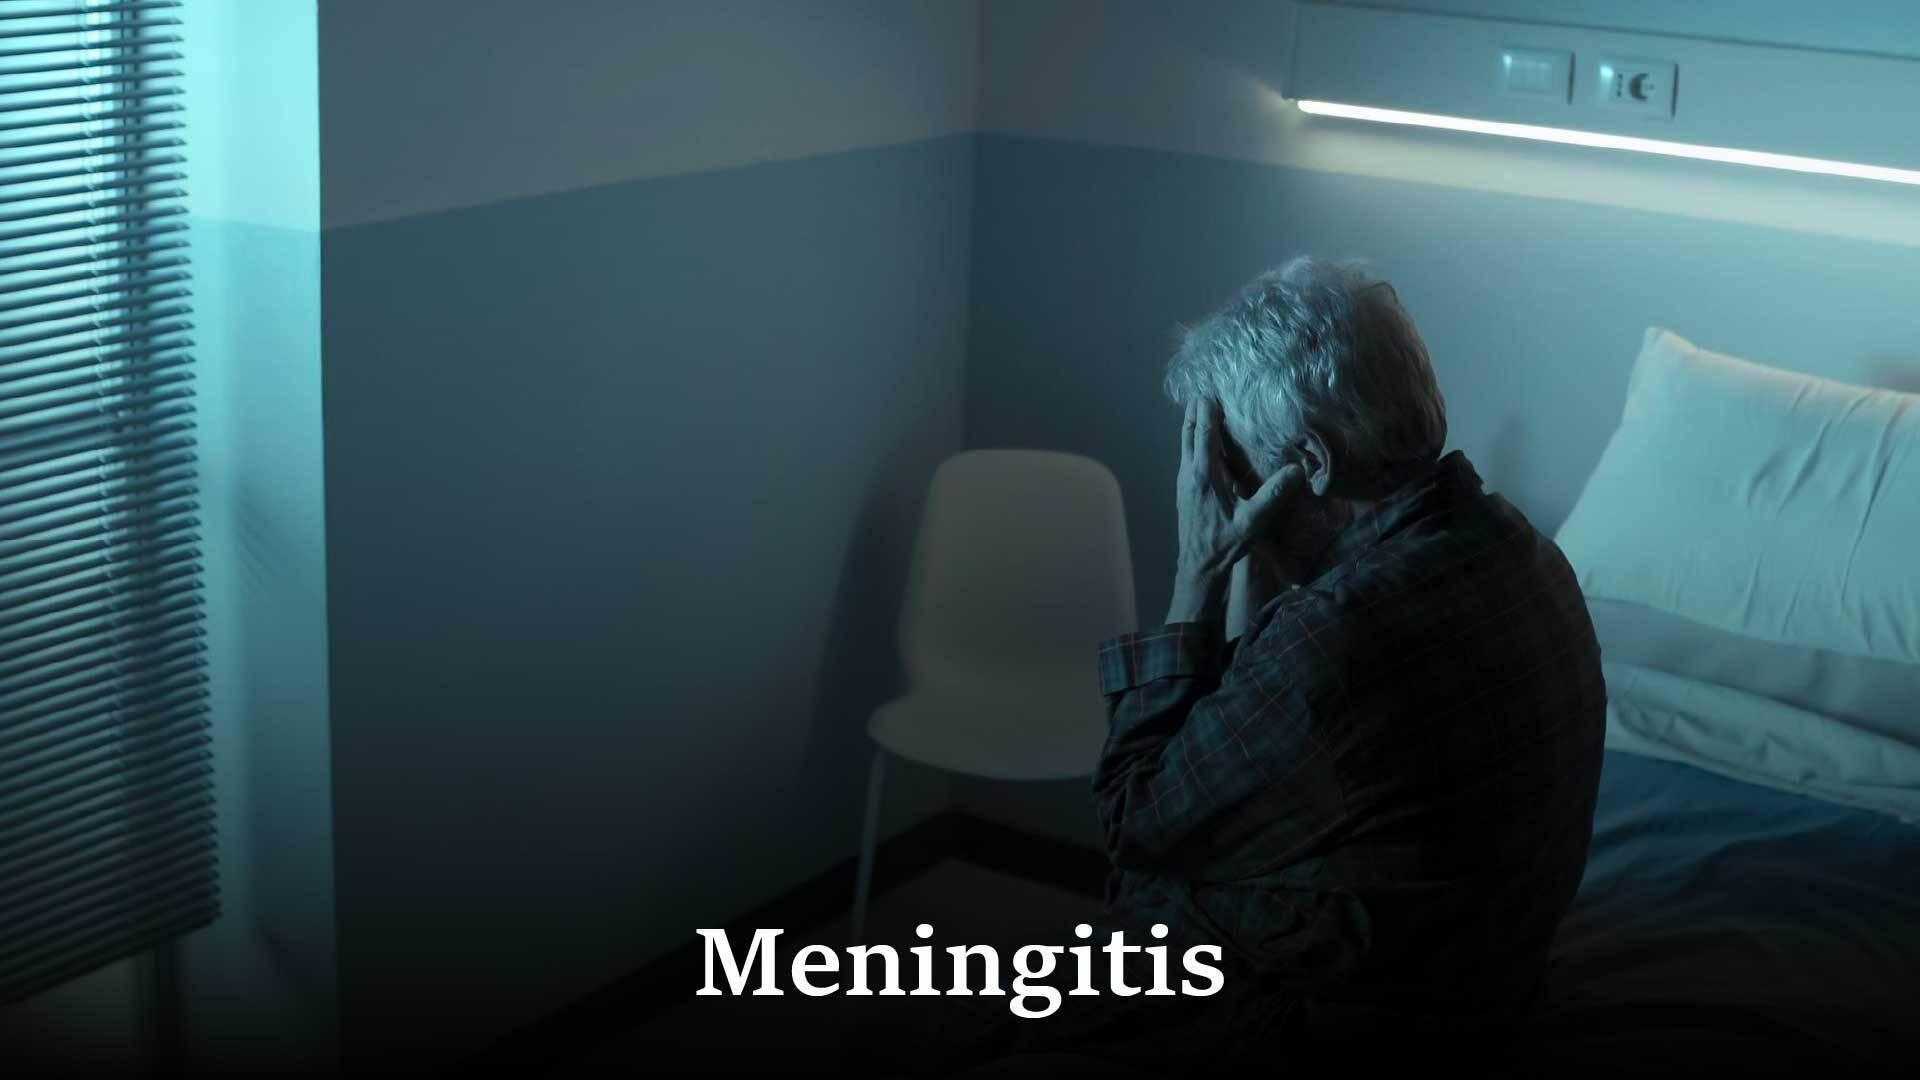 What is Meningitis